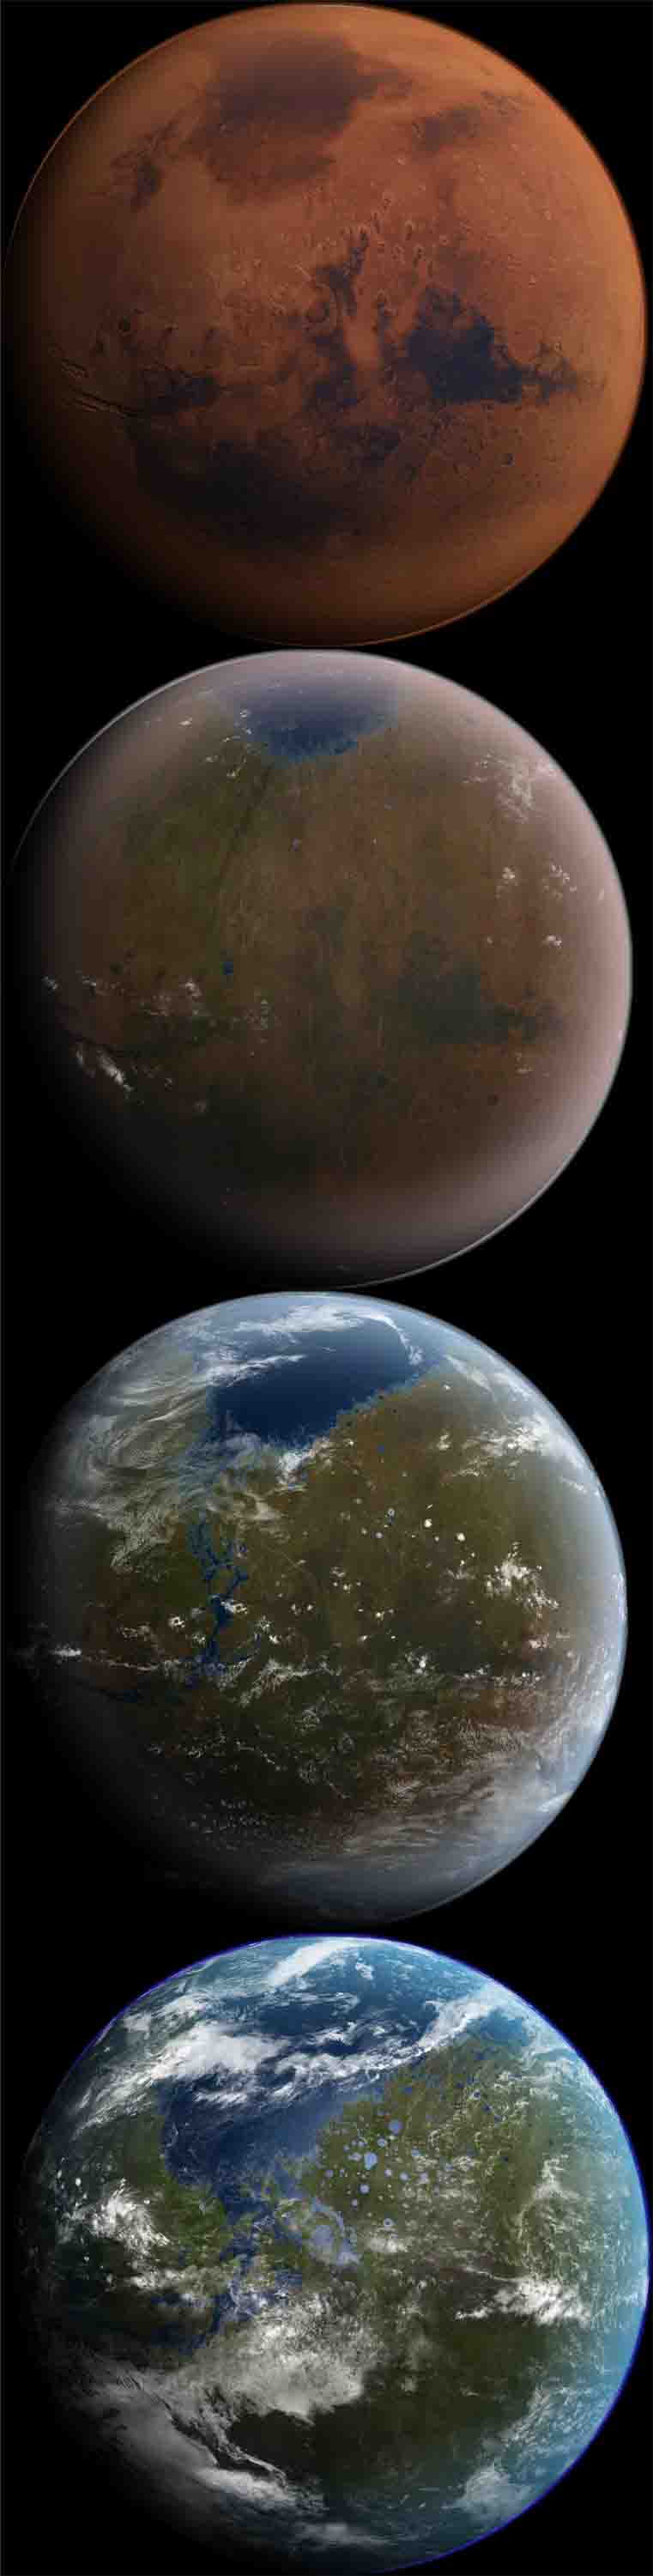 Mars being Terraformed